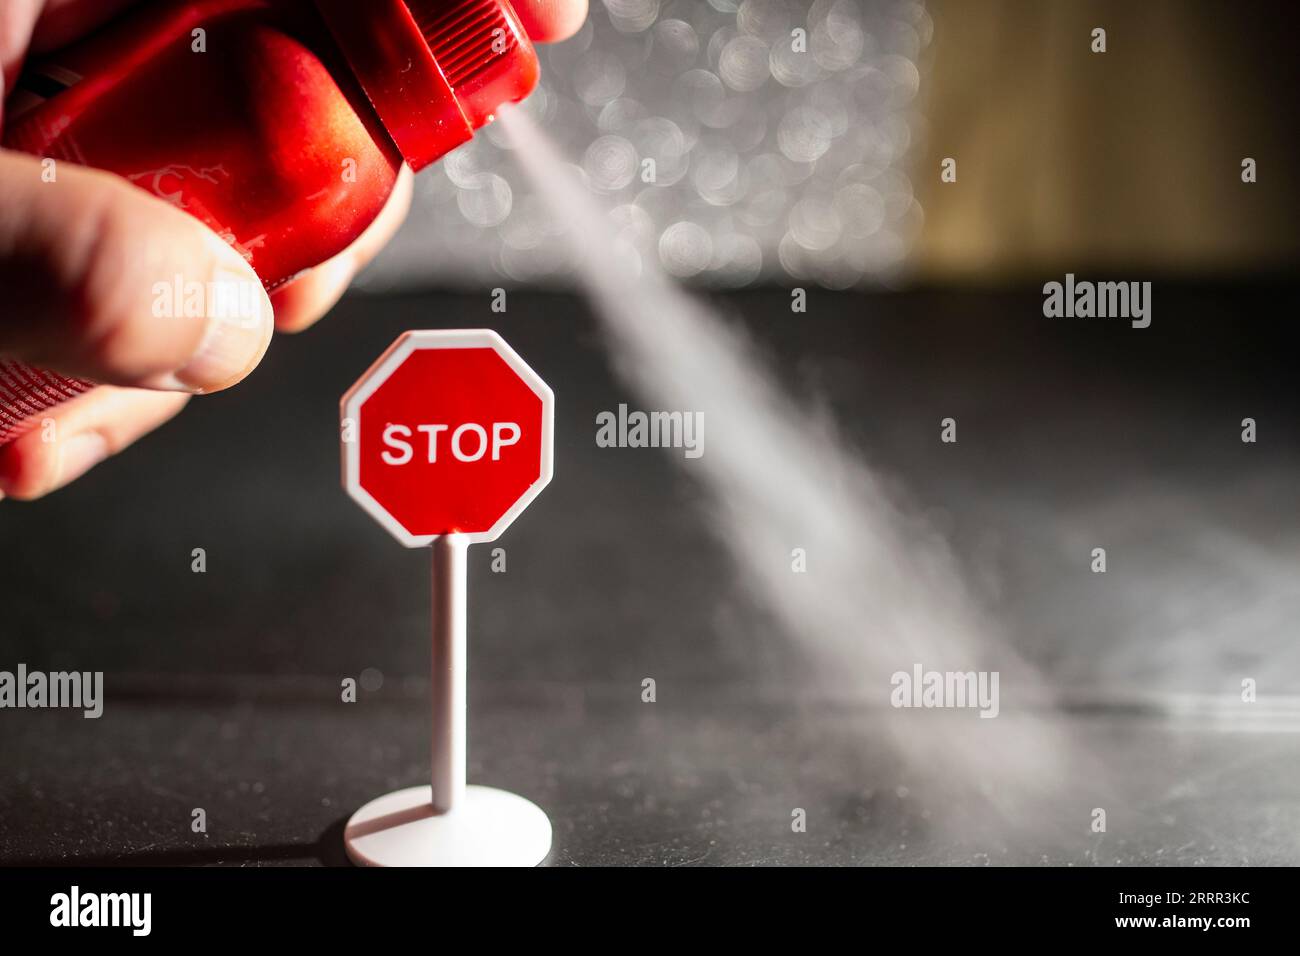 Utilisation d'un vaporisateur rouge avec du déodorant contre un panneau d'arrêt, concept de problème environnemental, mise au point douce en gros plan Banque D'Images